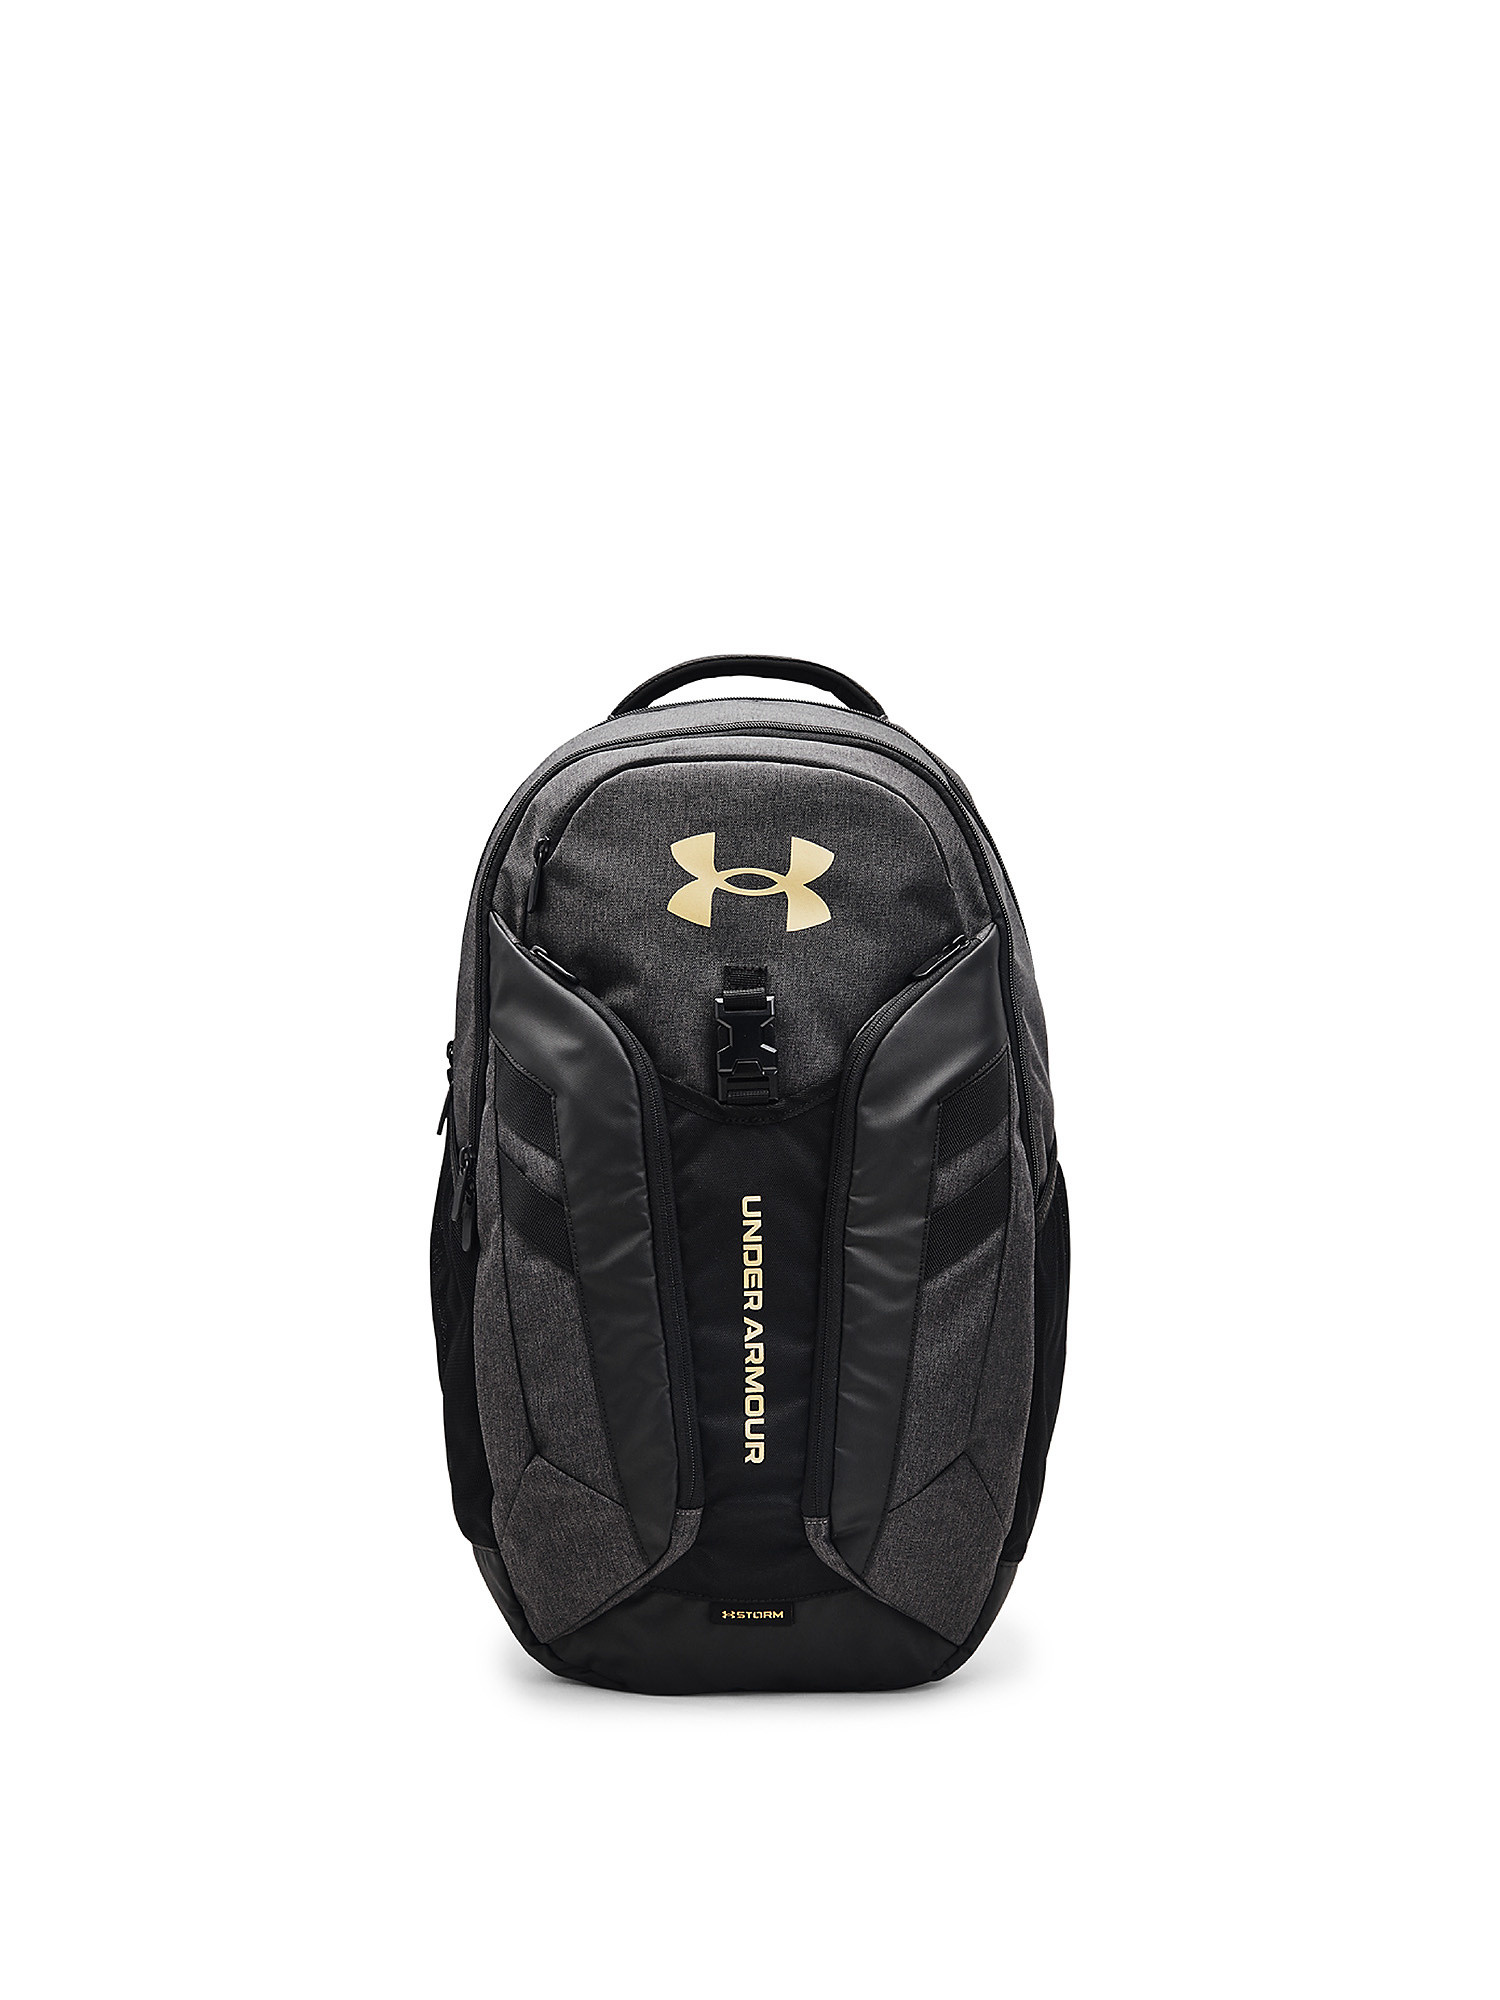 Under Armour - UA Hustle Pro Backpack, Black, large image number 0